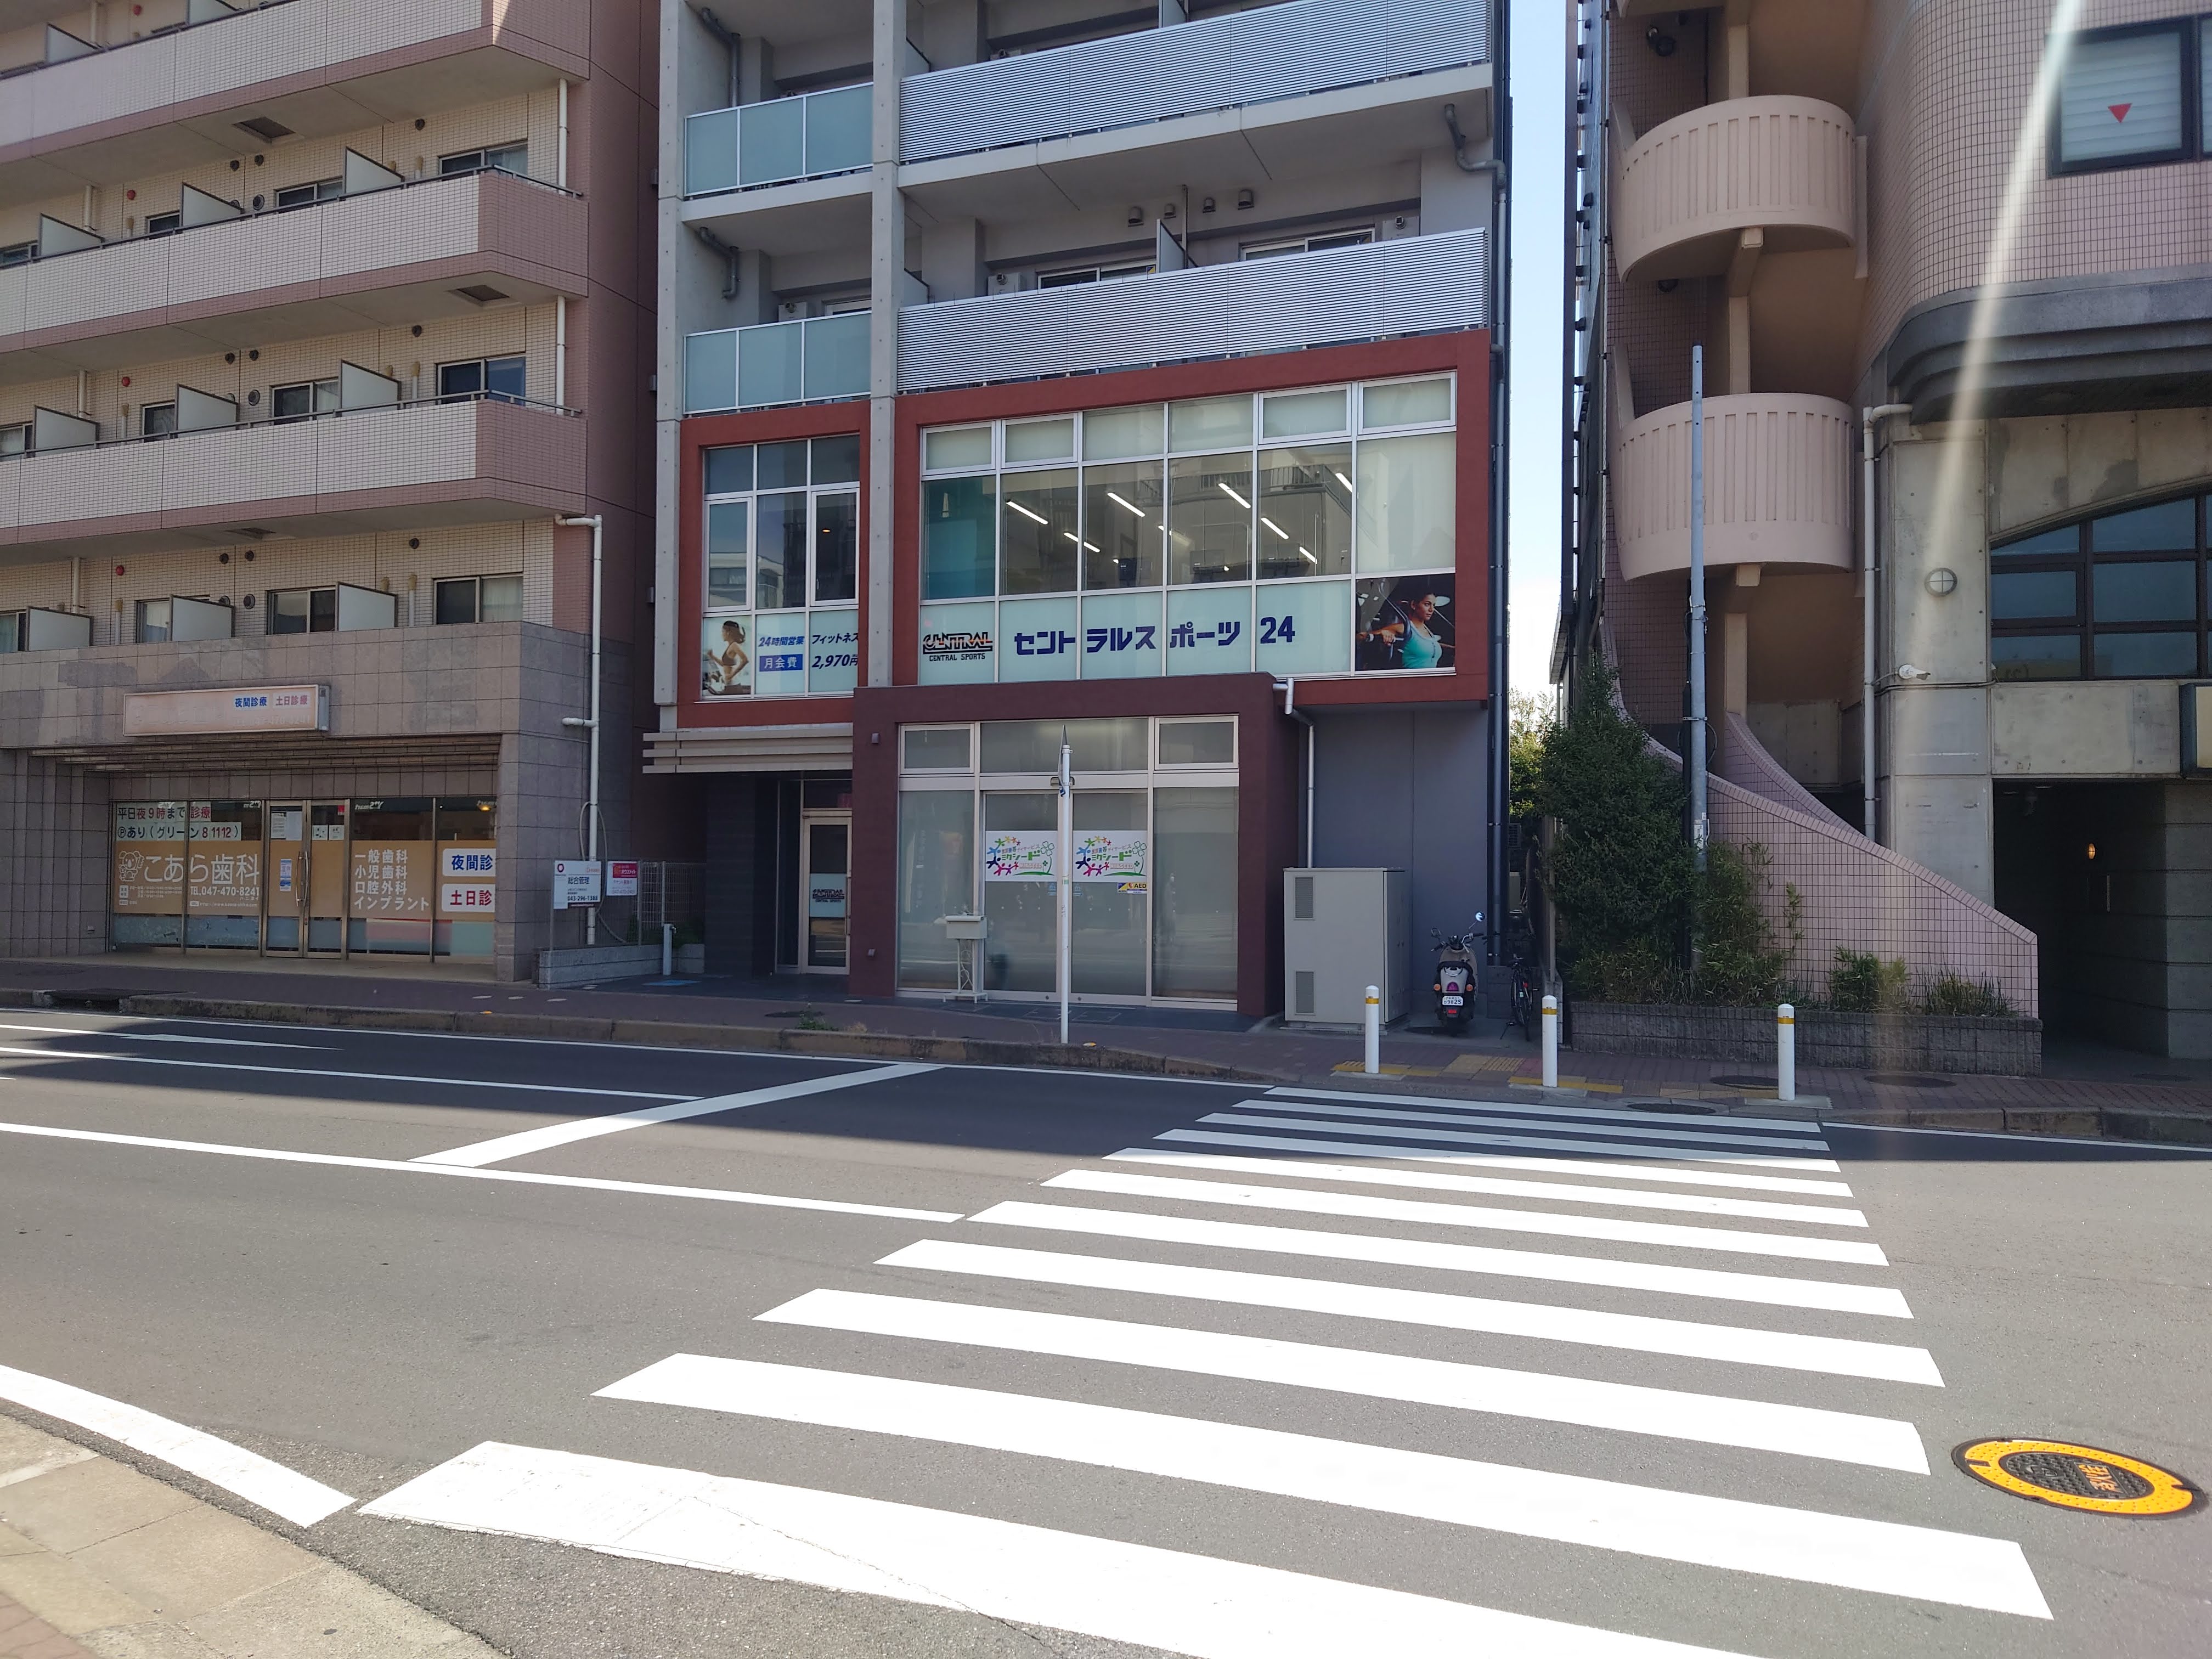 【アクセス】実籾駅北口ロータリーの横断歩道を渡ってすぐにあります。